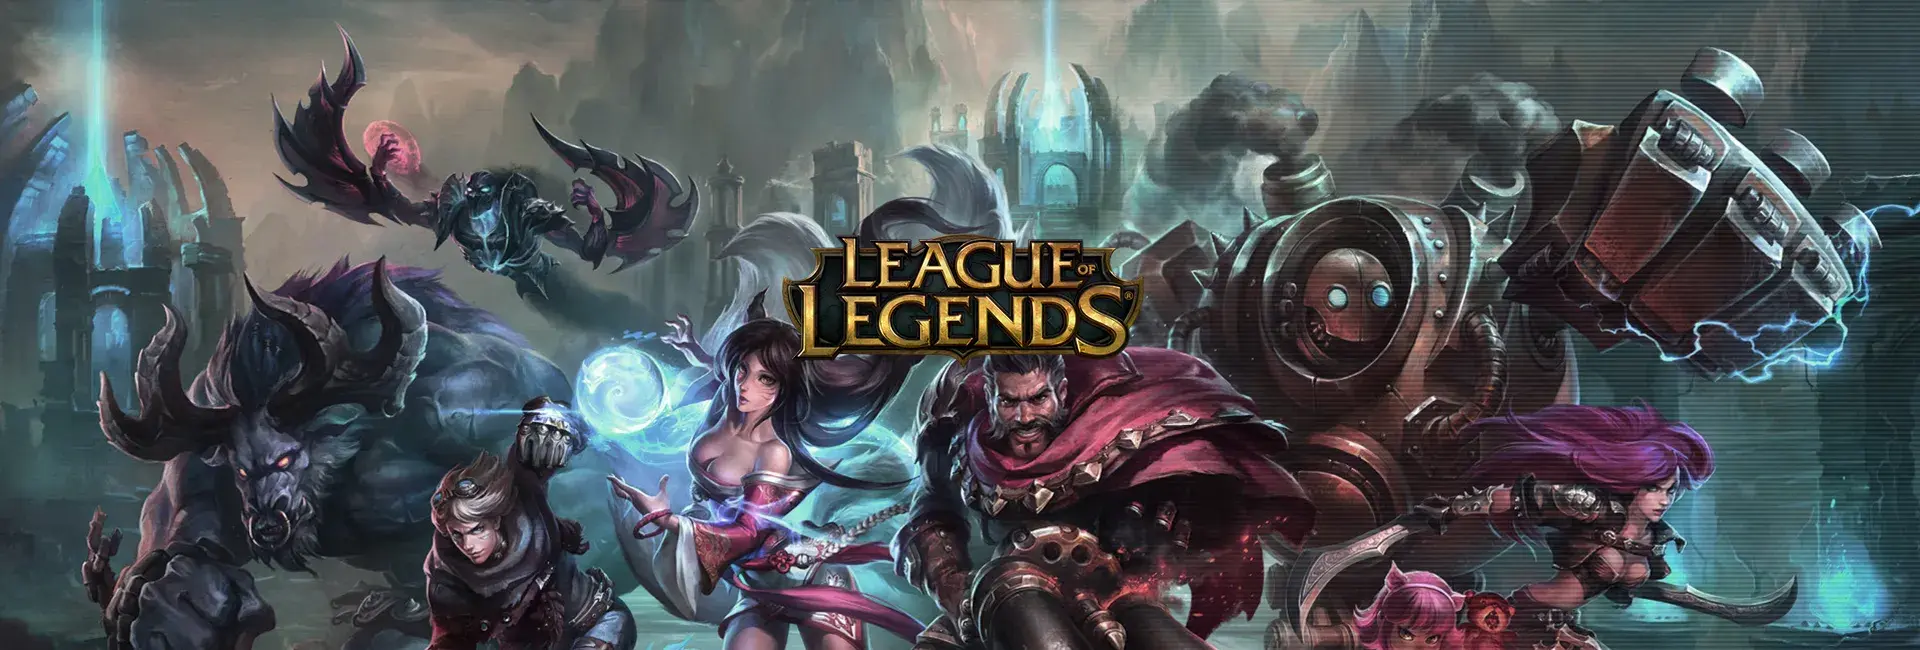 League of Legends (KR)